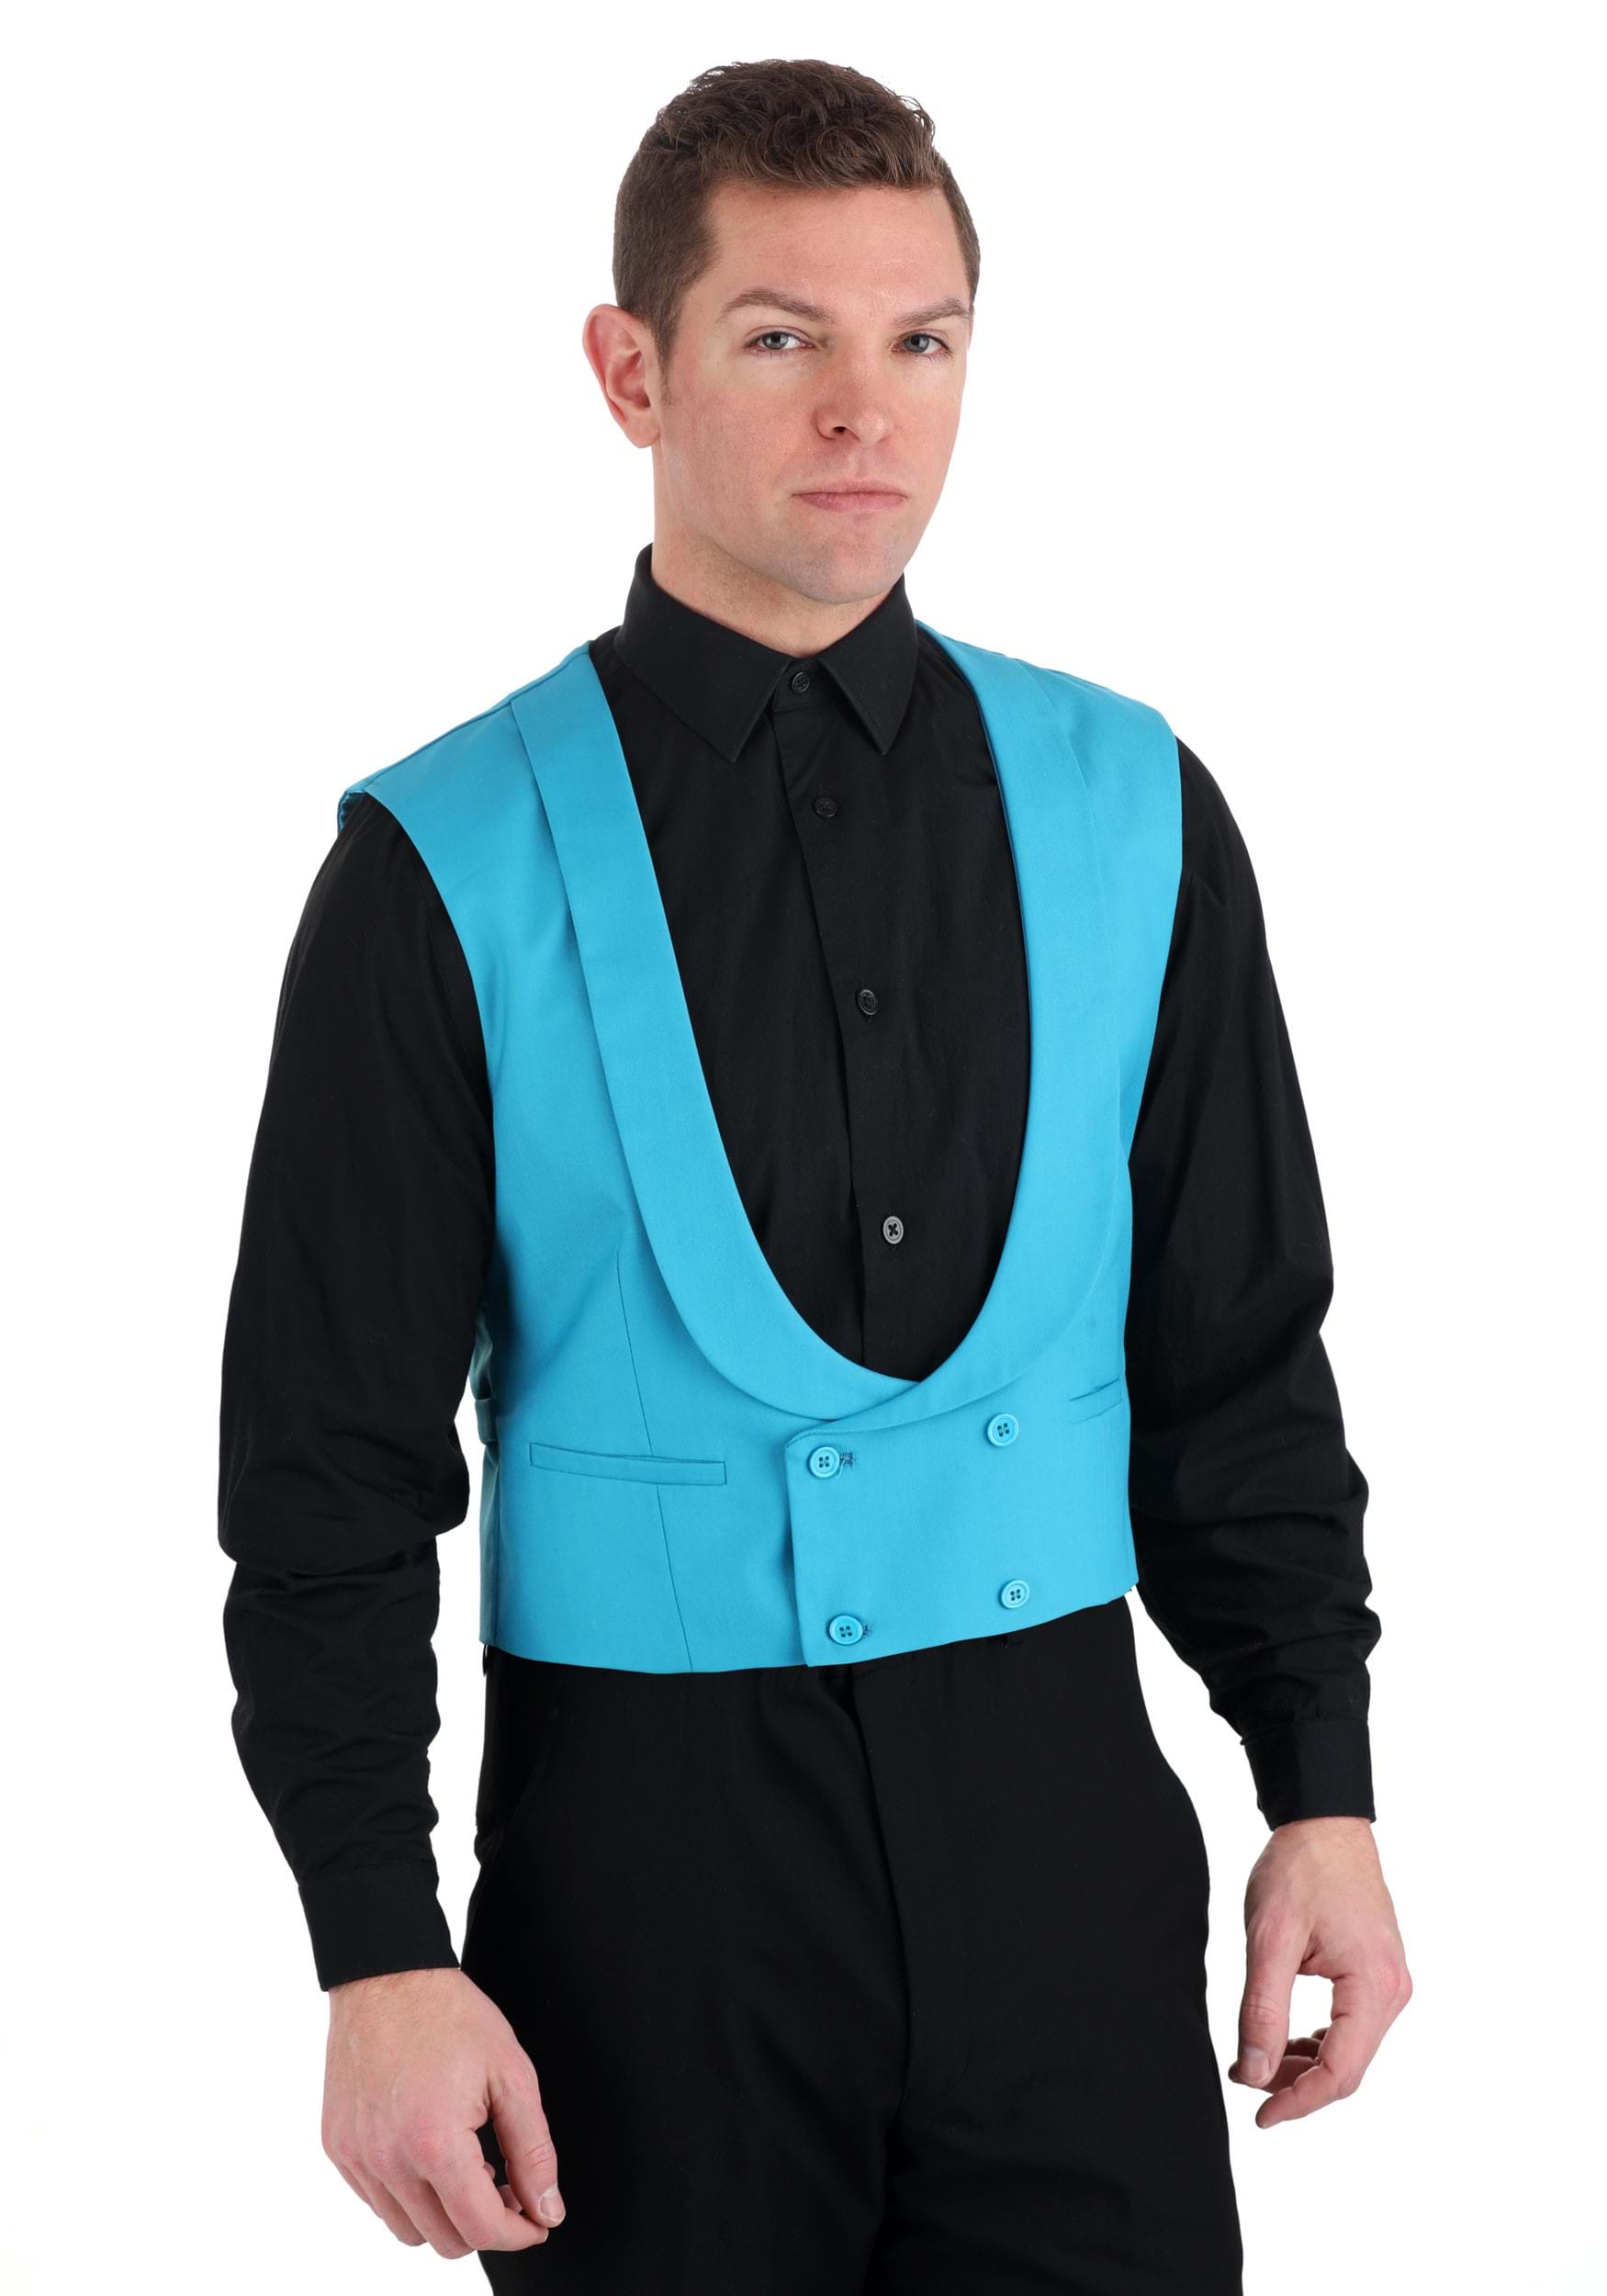 Photos - Fancy Dress JOKER FUN Suits Men's 1989 Batman  Suit Vest |   Costumes f 